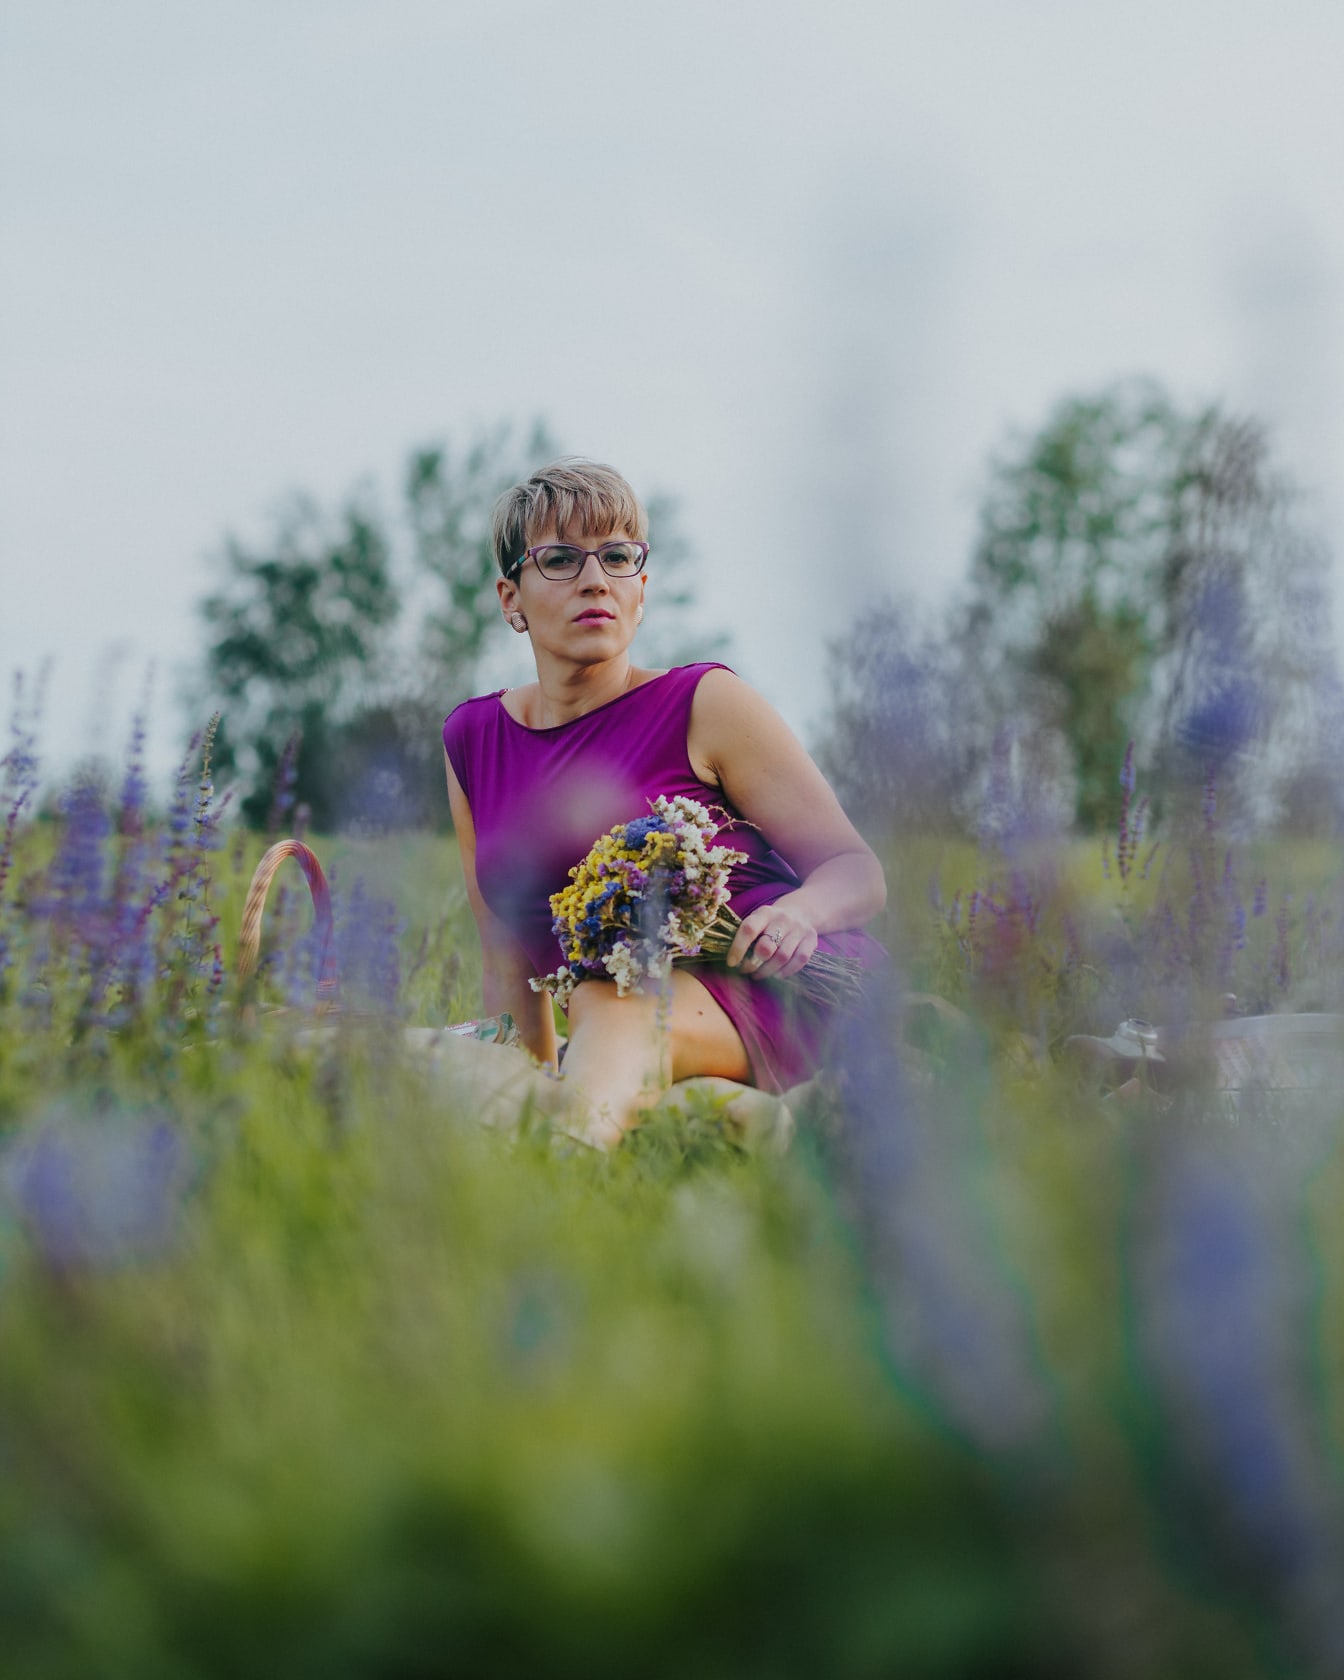 Muotokuva kauniista naisesta violetissa mekossa istumassa niityllä